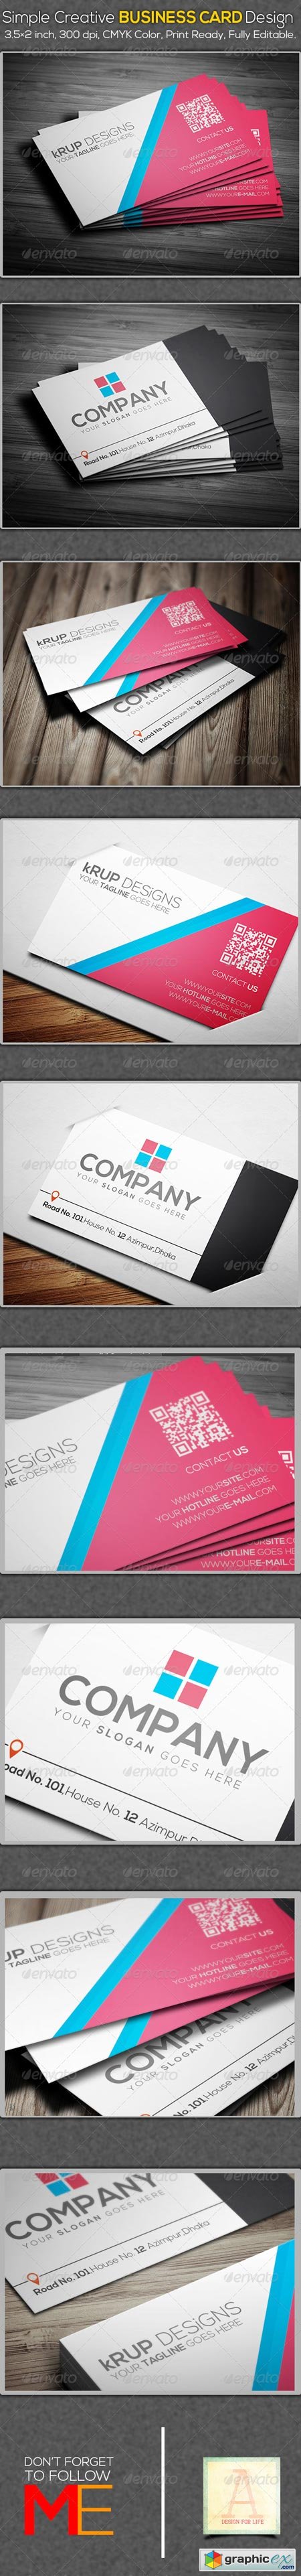 Simple Creative Business Card Design 6925320